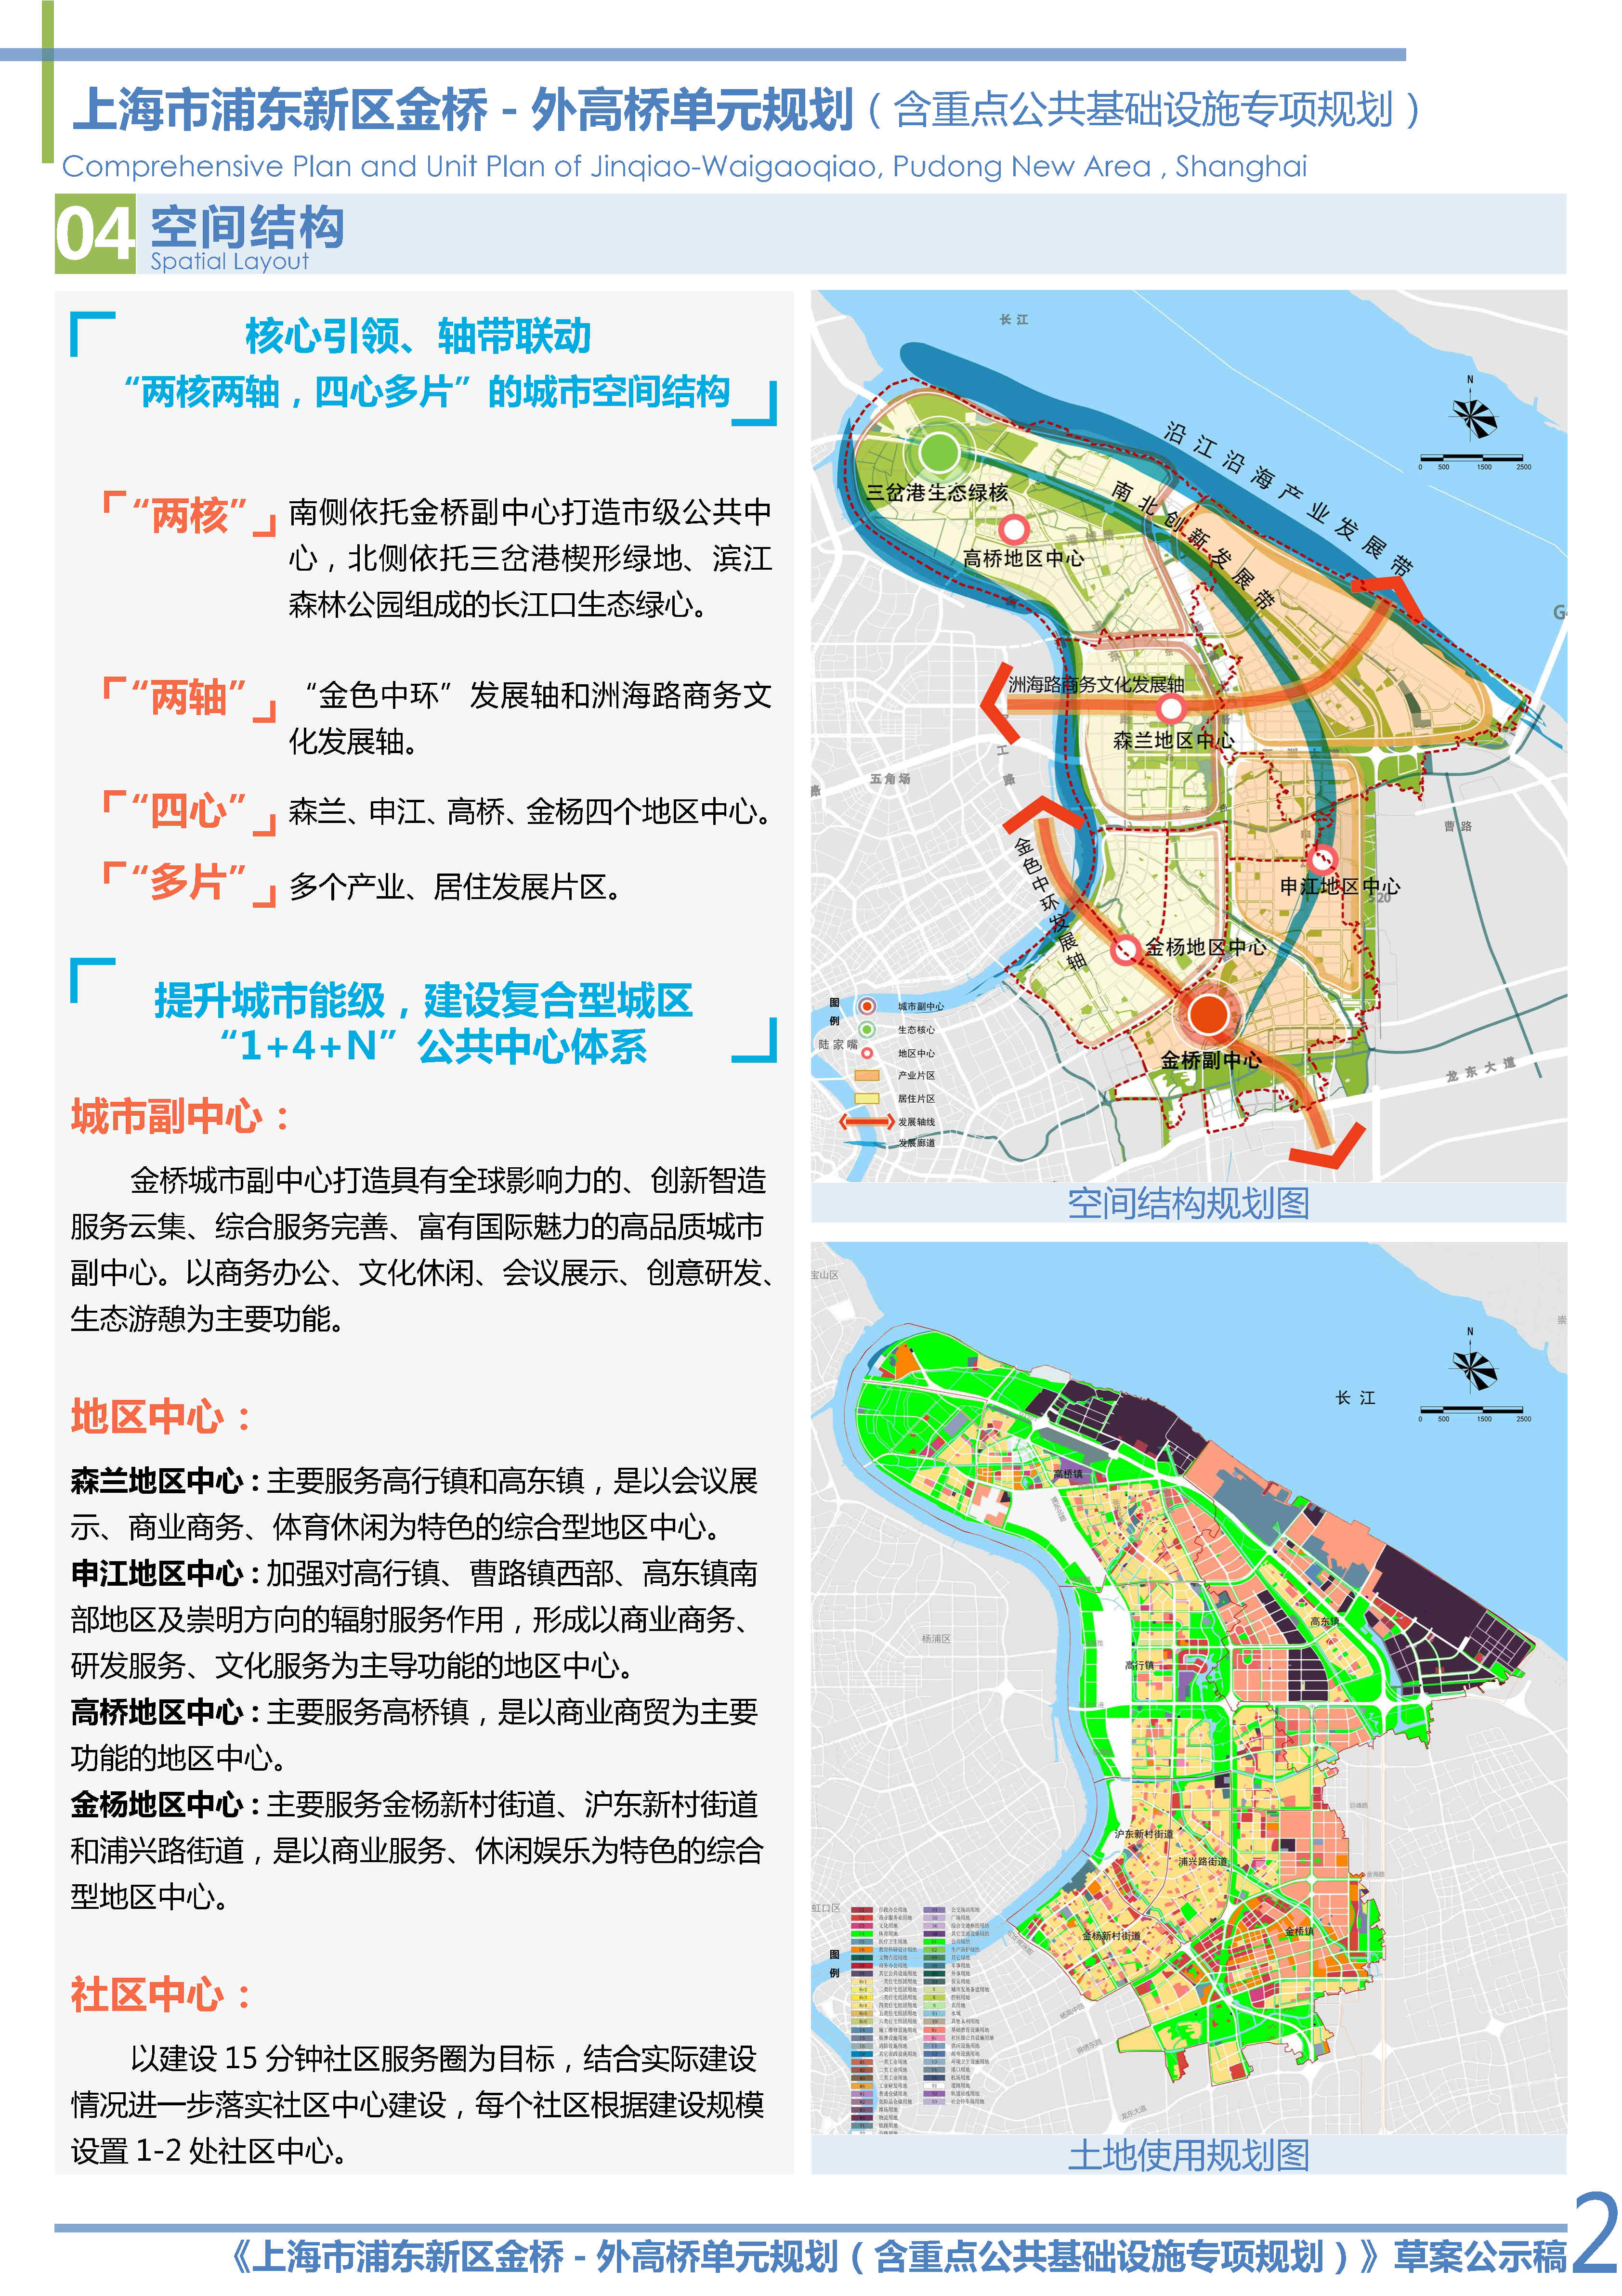 01-草案公示稿：上海市浦东新区金桥-外高桥单元规划_Page2.jpg